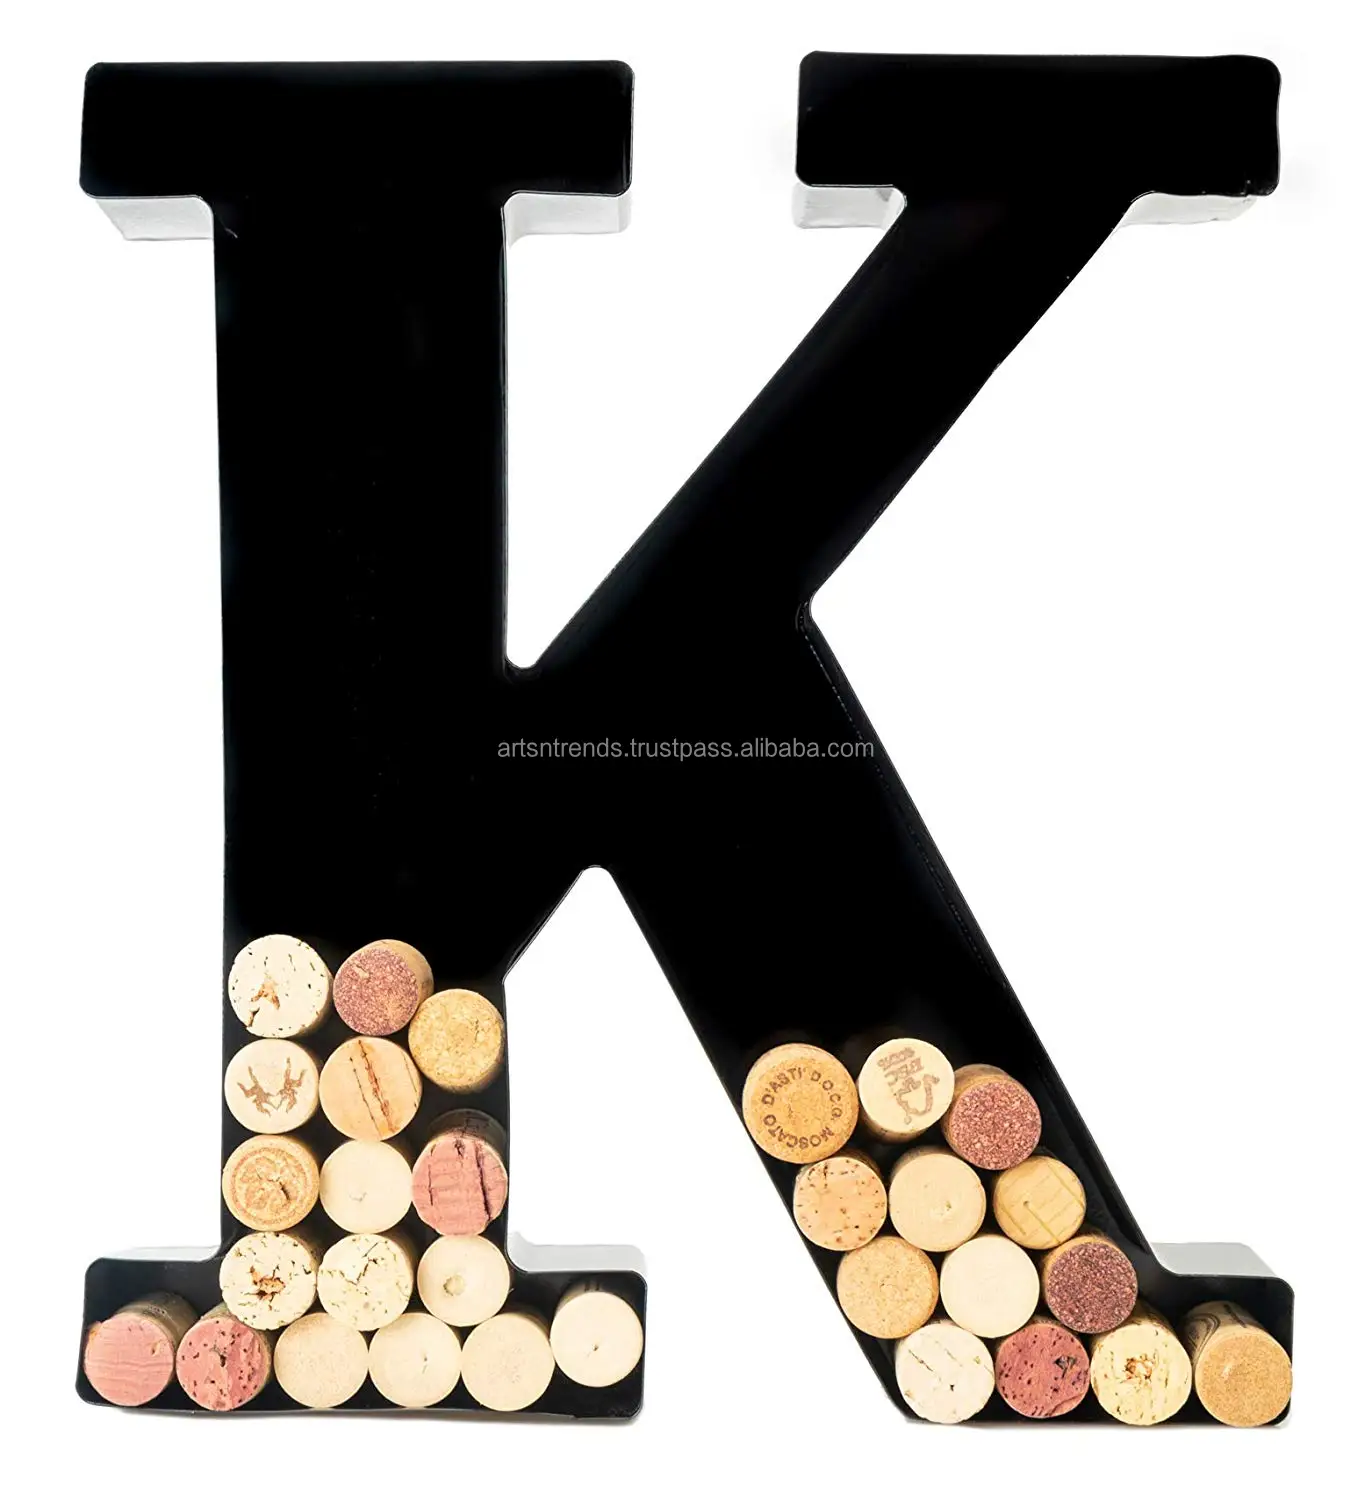 Source Wine Cork Holder Metal Monogram Bold Letter K Manufacturer